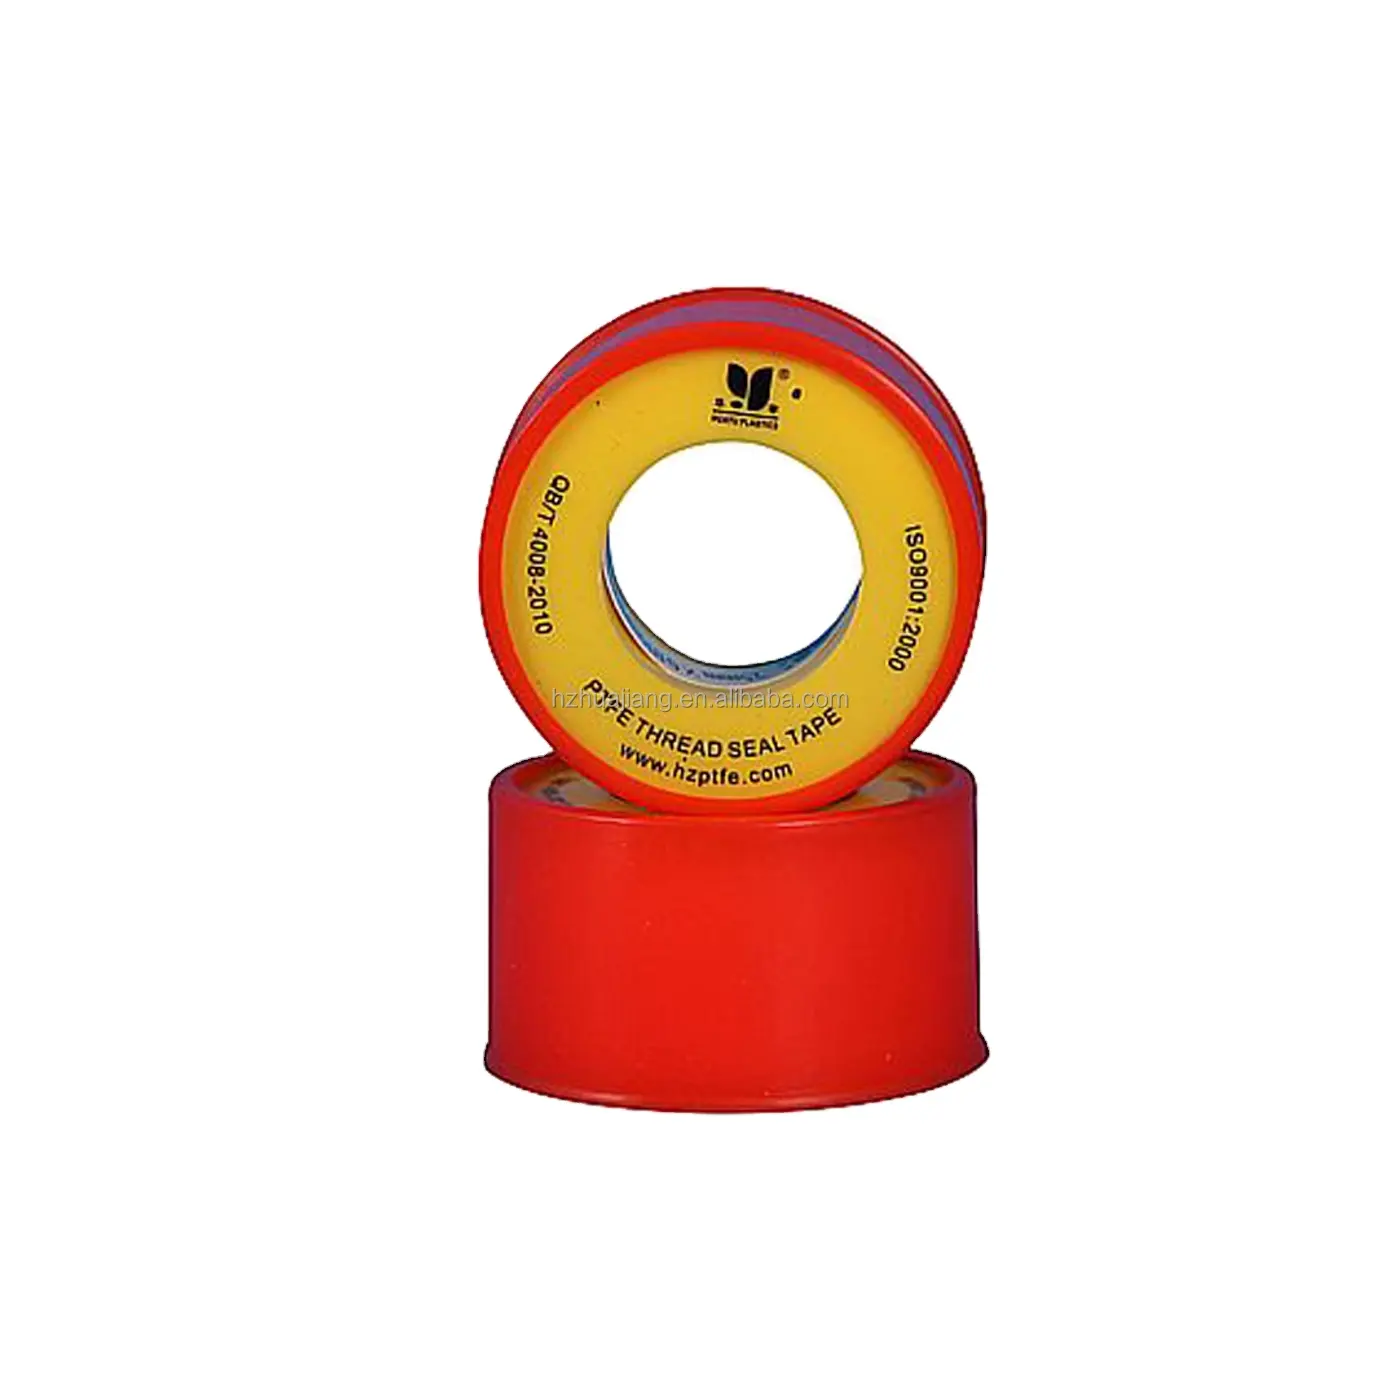 Beste Qualität Ptfe 12 mm 1/2 Zoll sanitäres Band für Dradenversiegelung